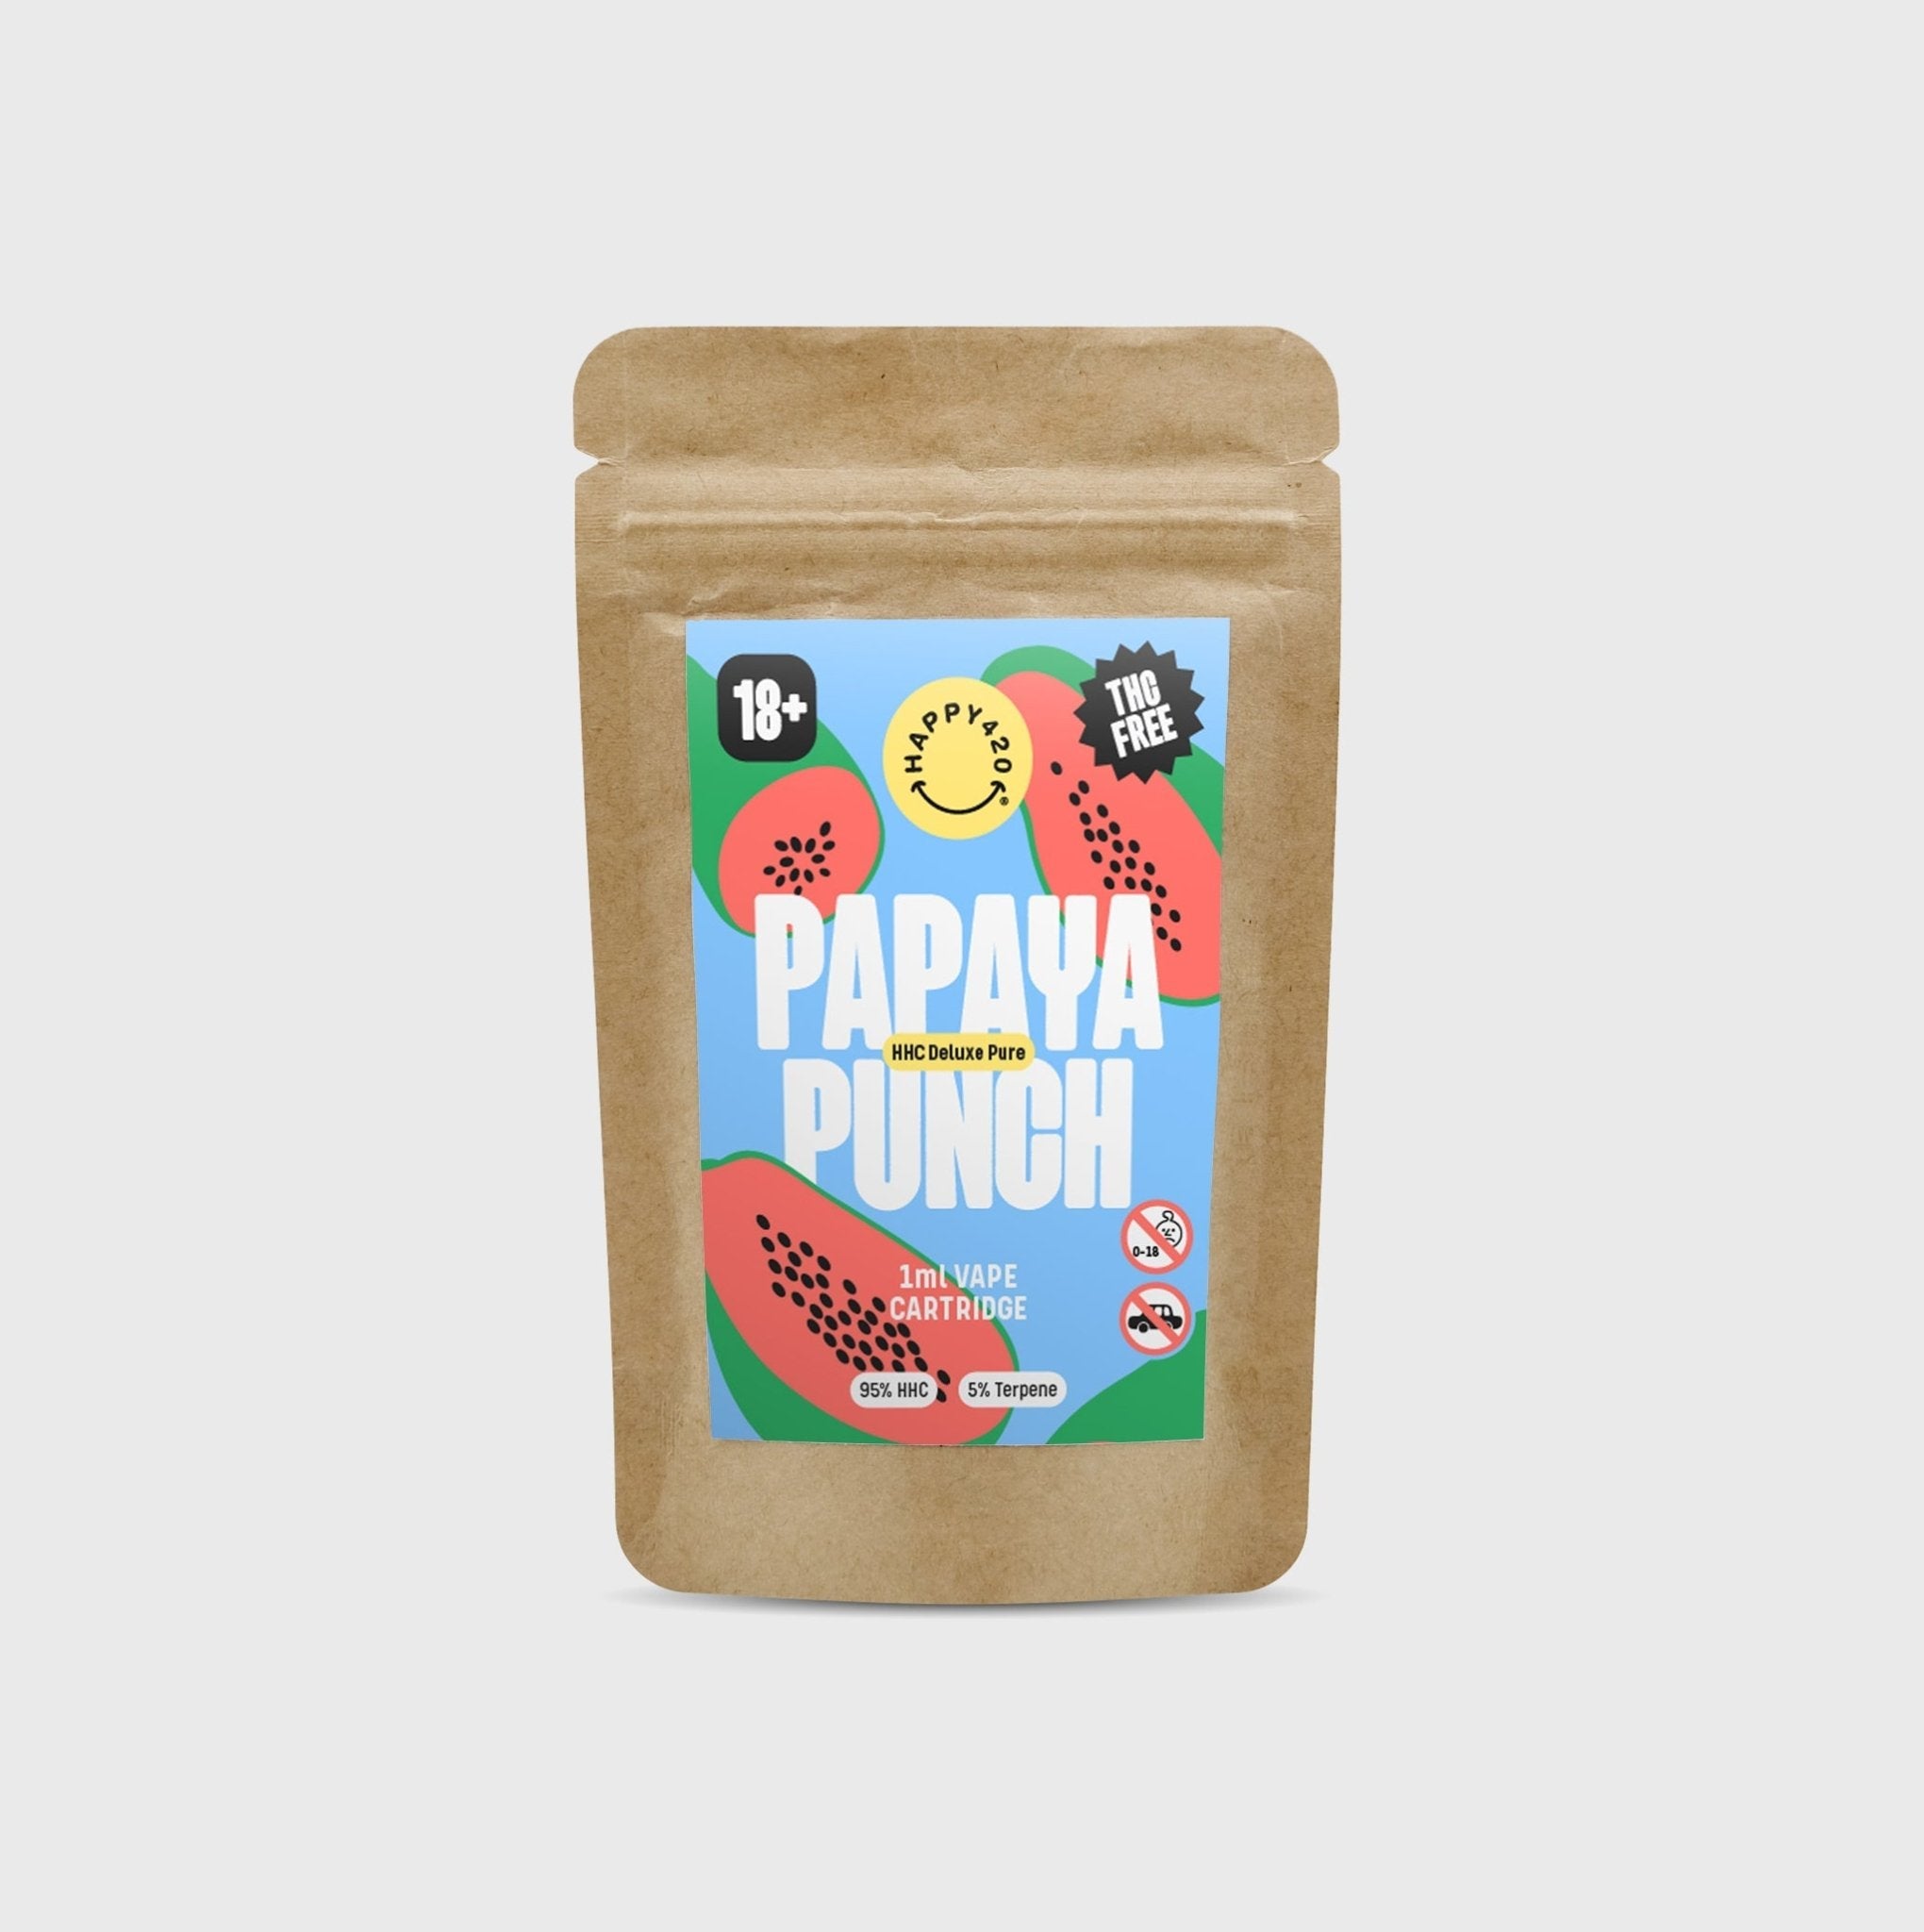 NOUVEAU ! HHC Deluxe Pure Papaya Punch - 95% HHC - Happy420.fr